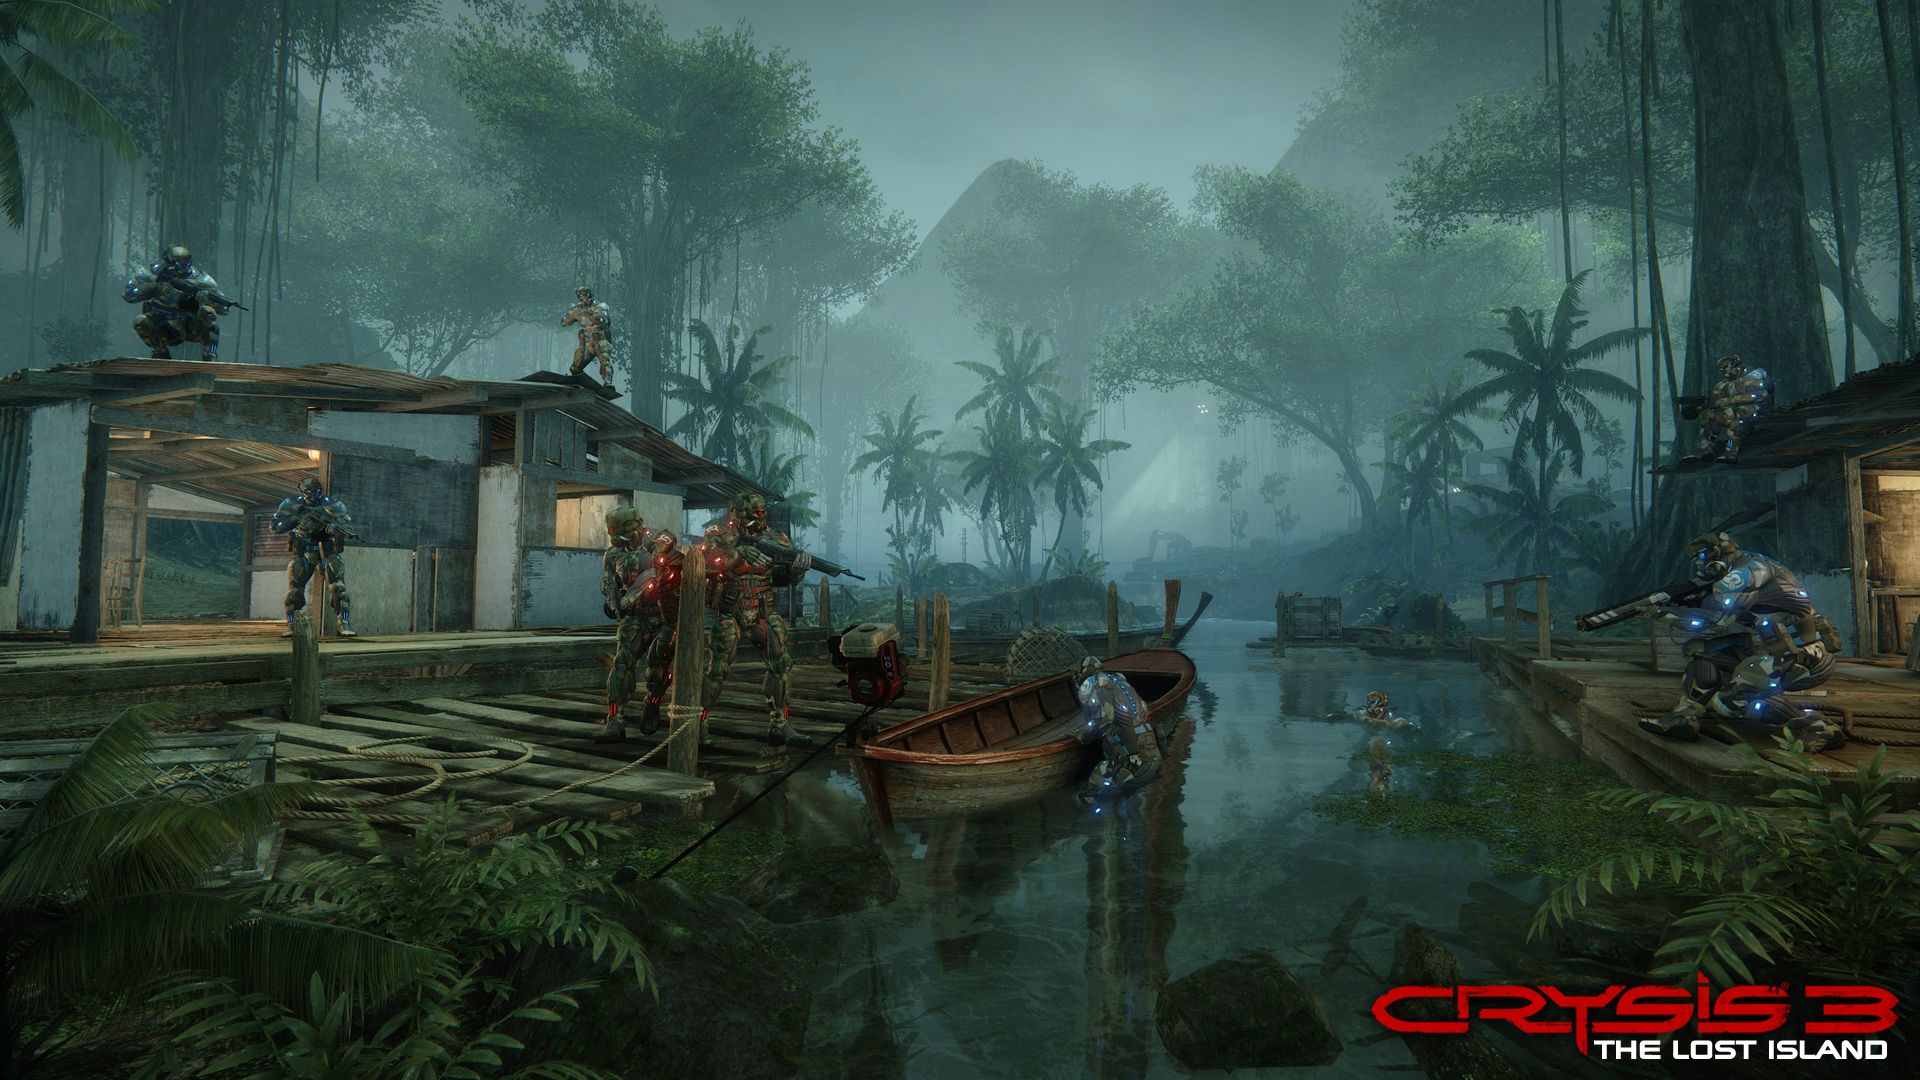 Immagine pubblicata in relazione al seguente contenuto: Presentazione e screenshots del DLC Crysis 3: The Lost Island | Nome immagine: news19611_Crysis-3-The-Lost-Island_4.jpg